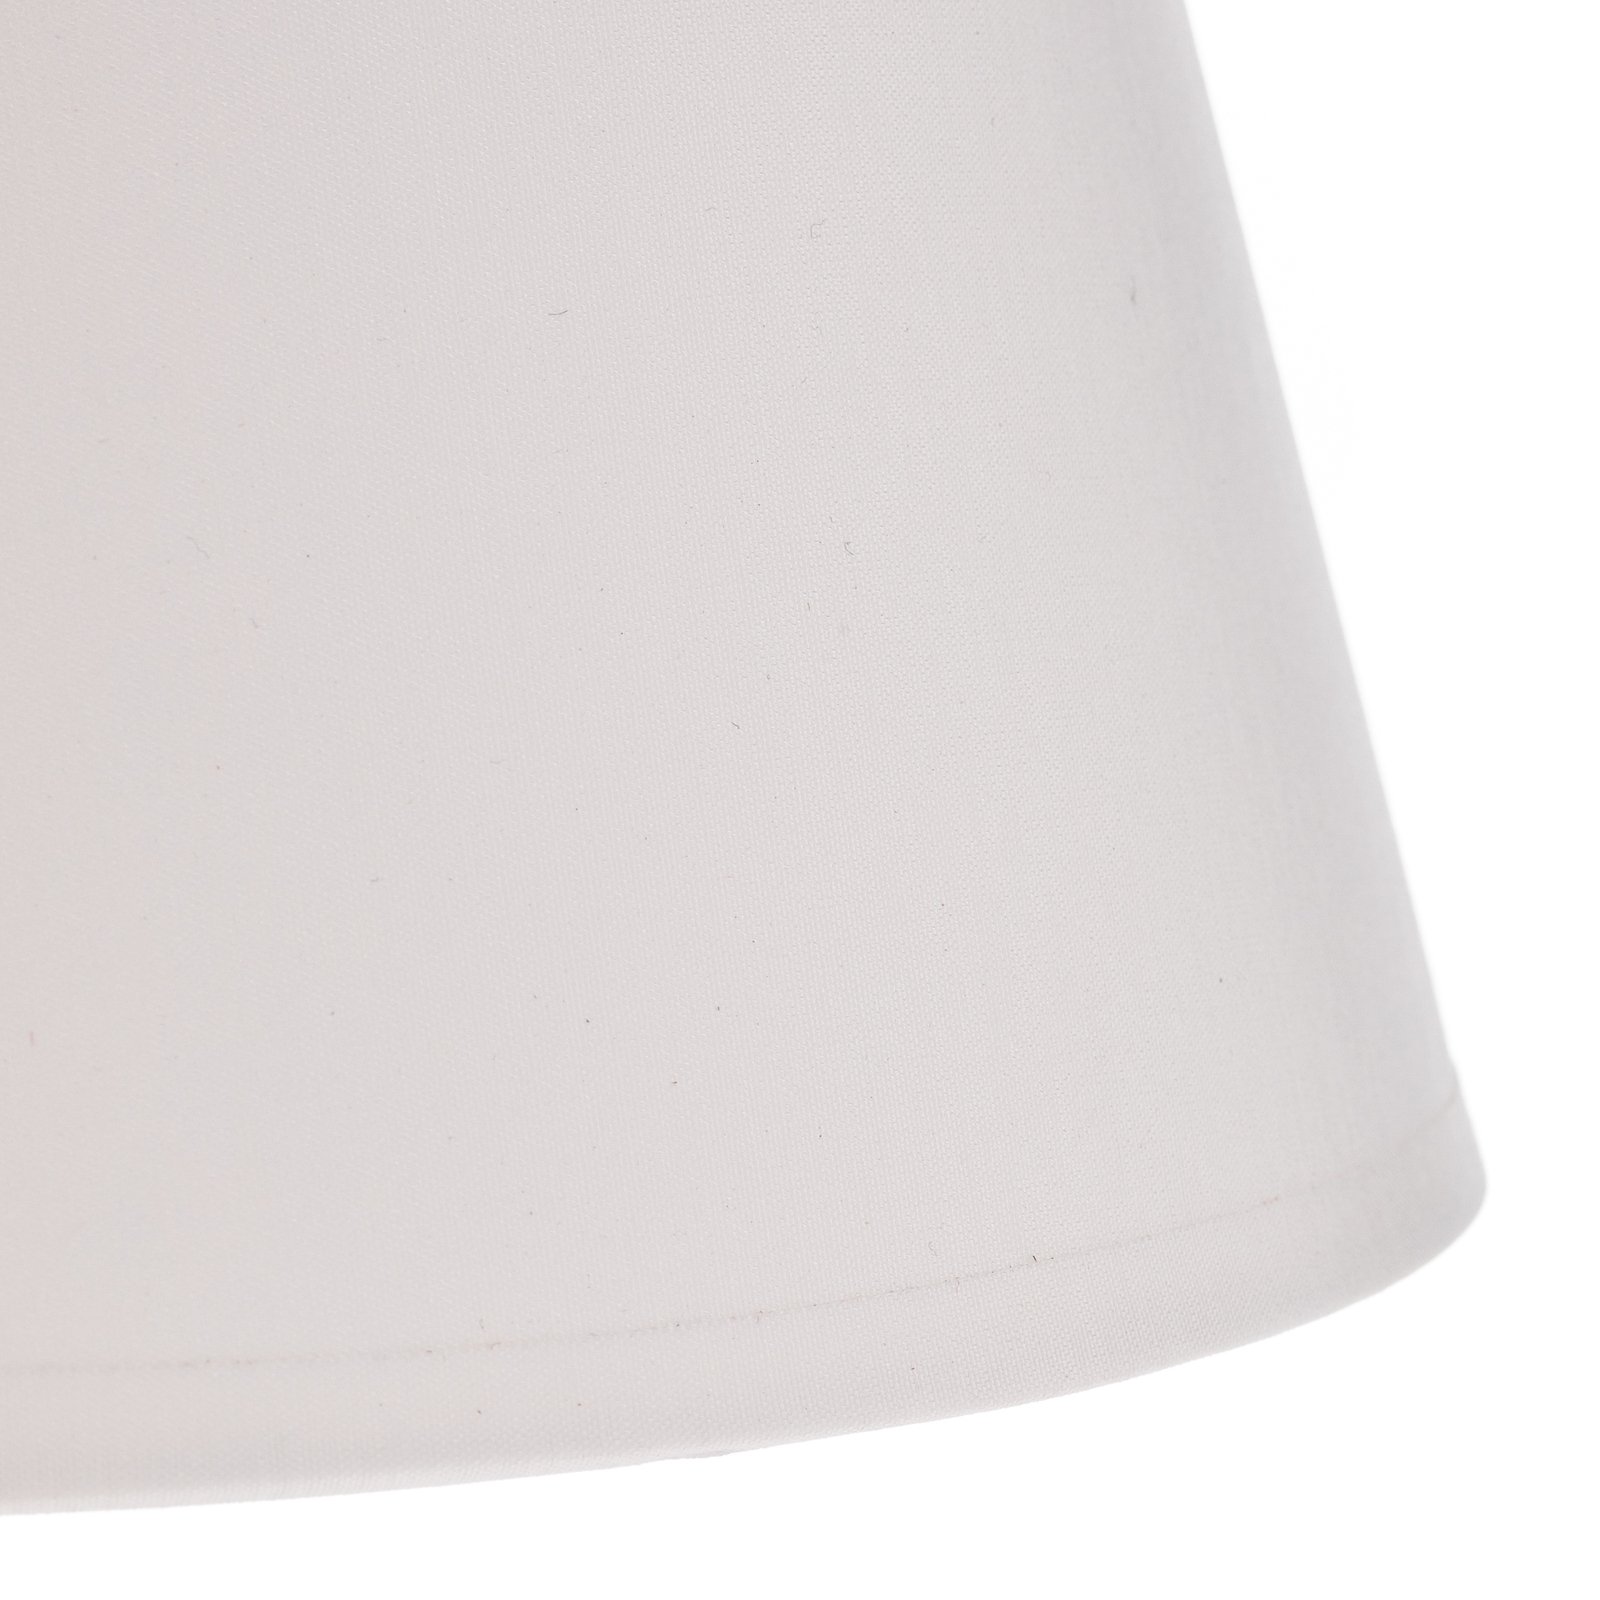 Lámpara de mesa Soho, altura cónica 33 cm, blanca